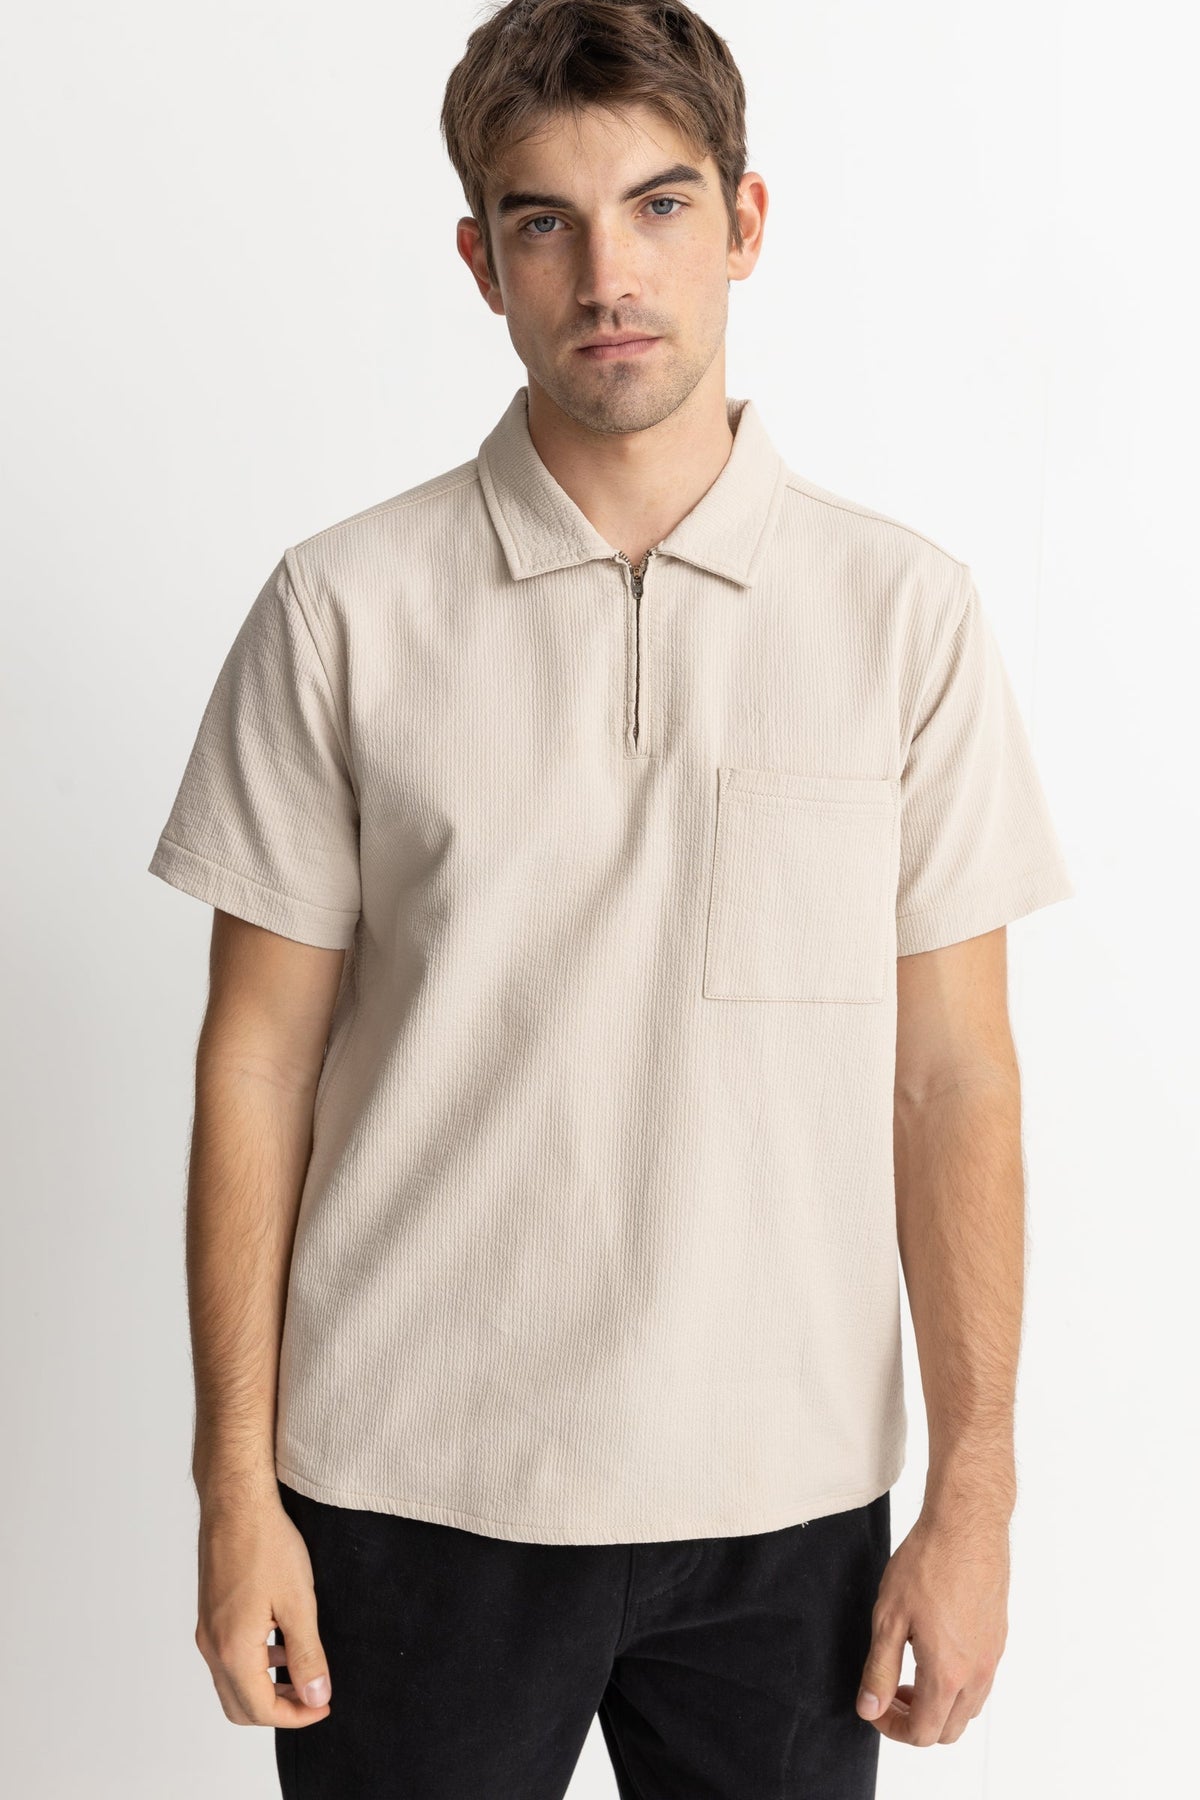 Textured Quarter Zip S/S Shirt - Sand